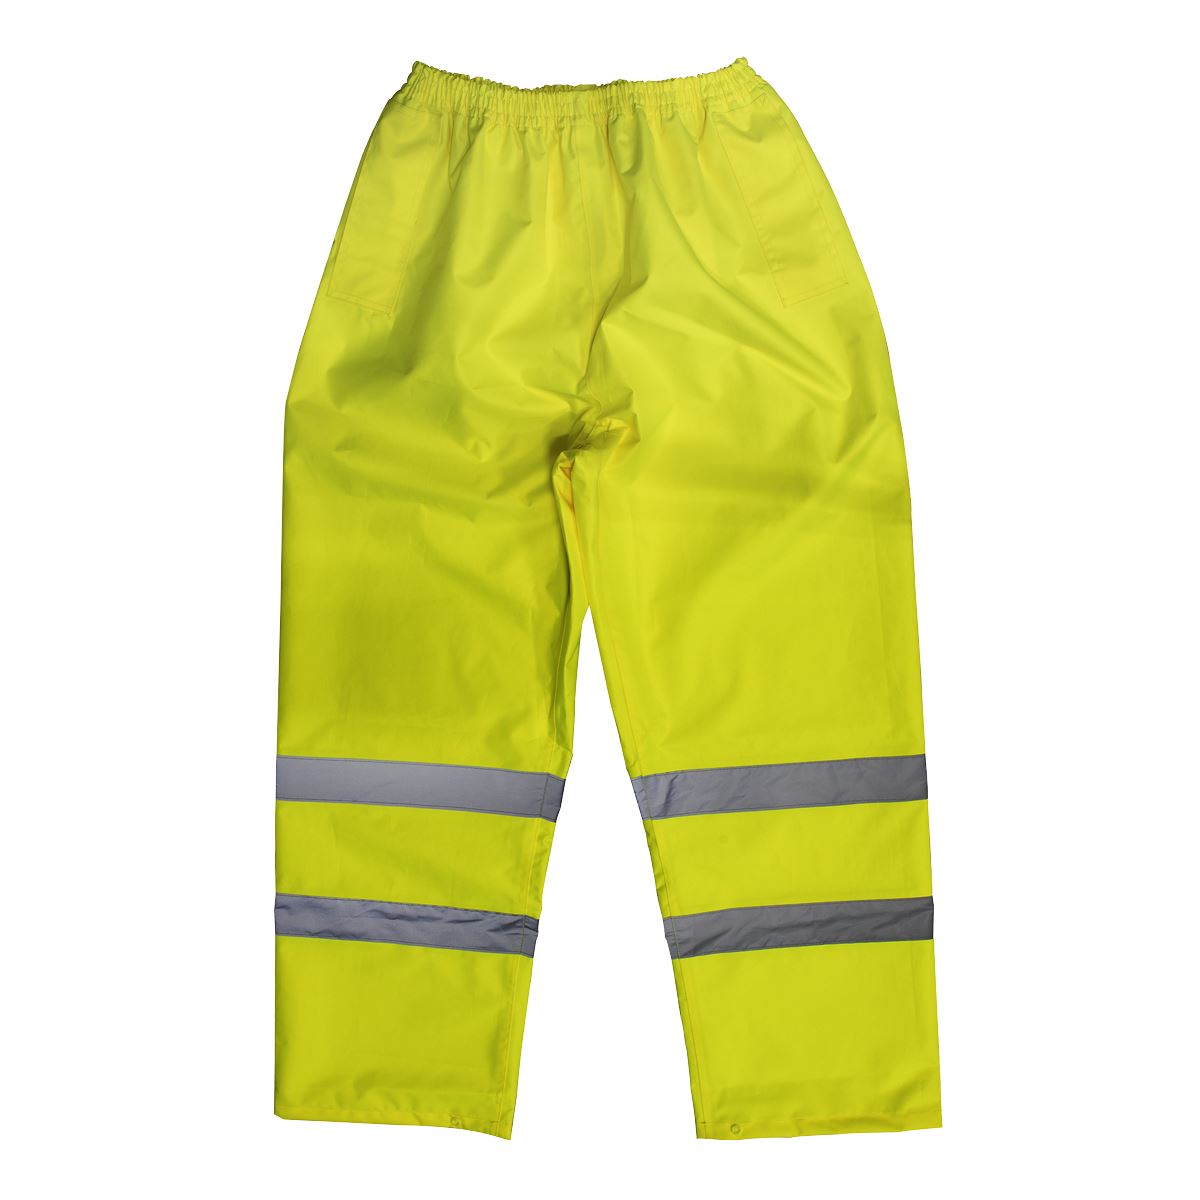 Worksafe by Sealey Hi-Vis Yellow Waterproof Trousers - Medium